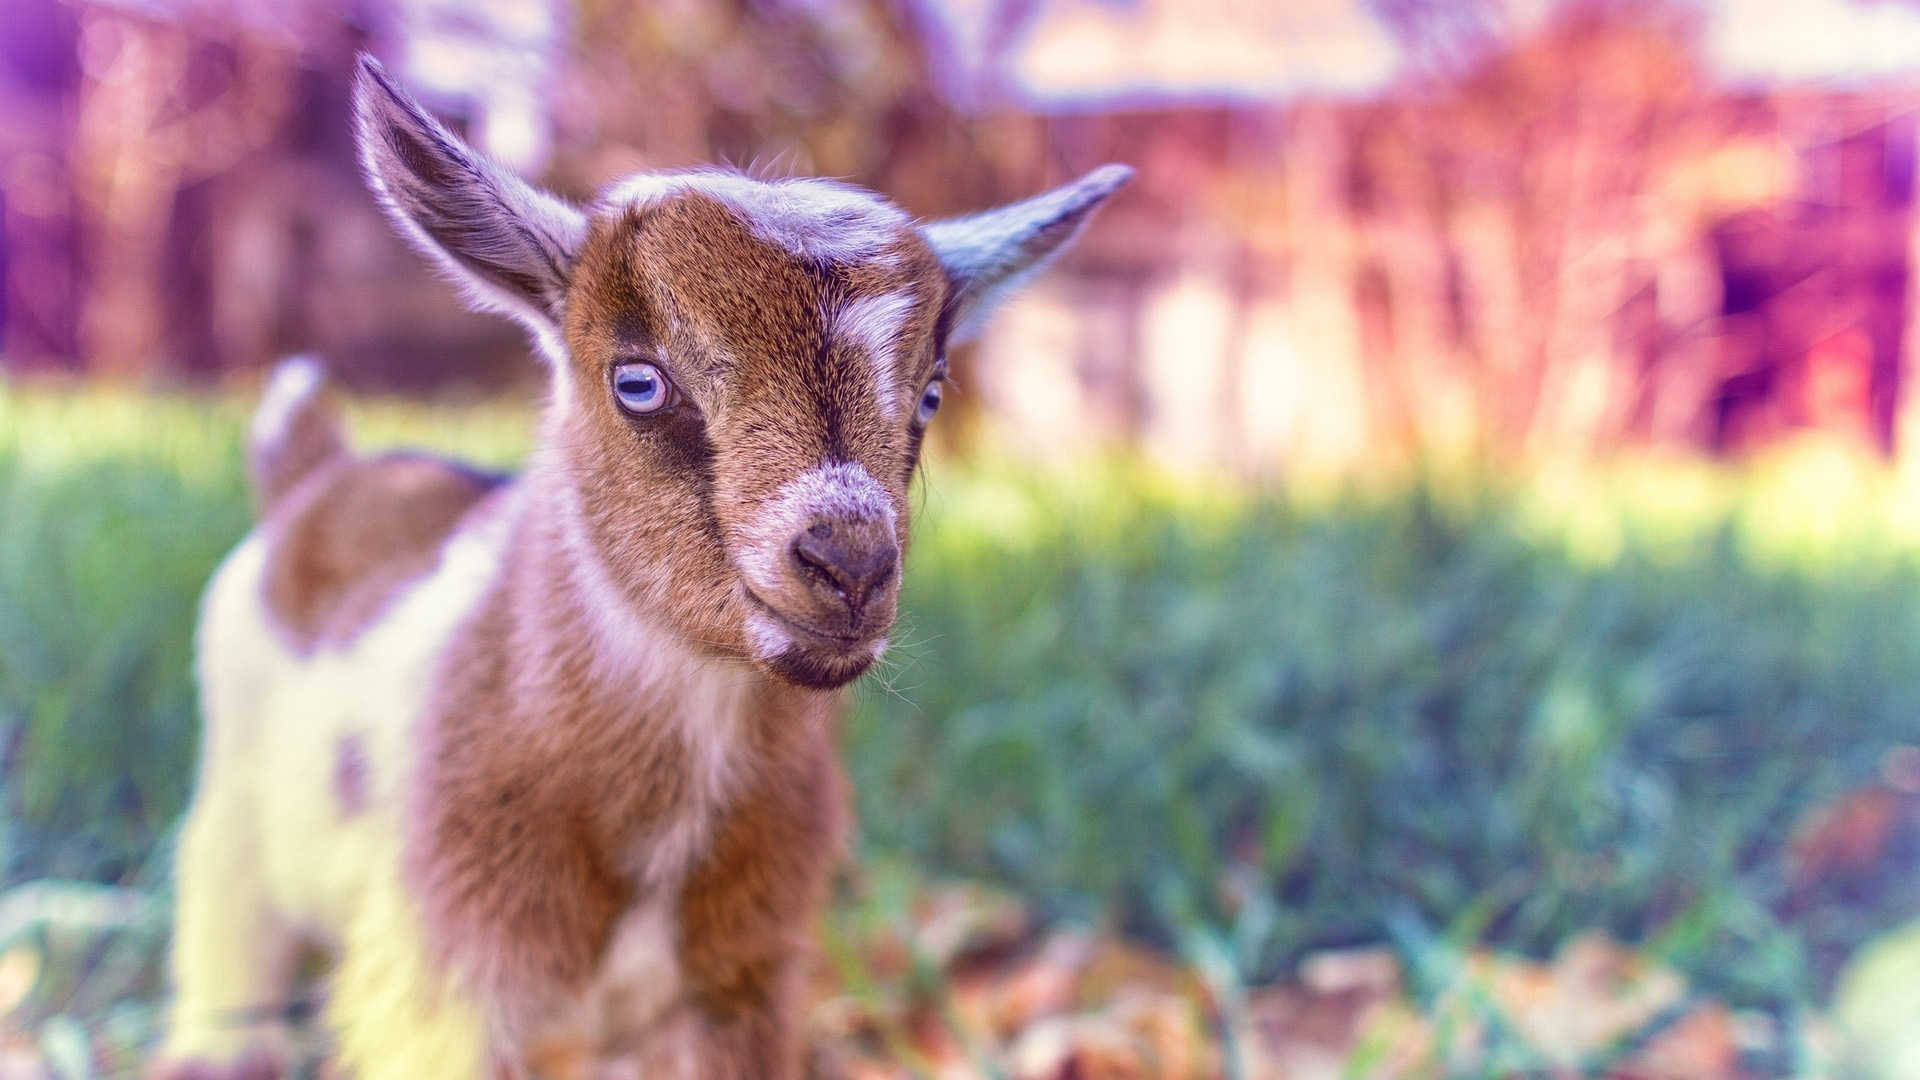 Blue-eyed Baby Goat Background